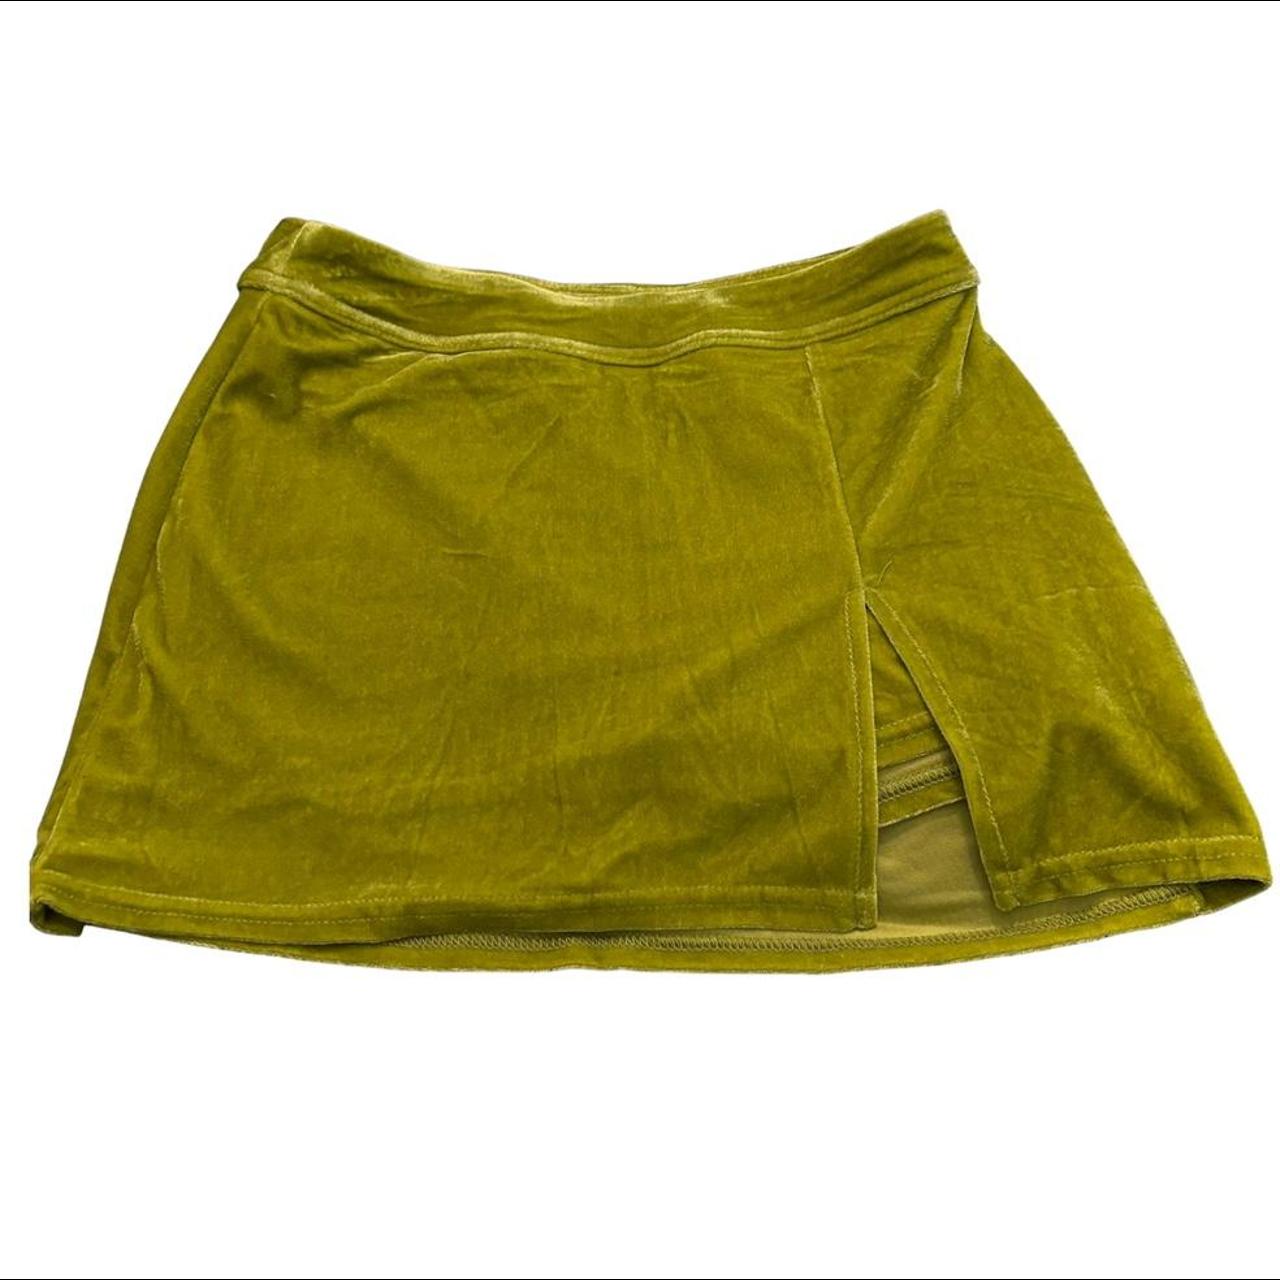 velvet lime green mini skirt w shorts underneath /... - Depop